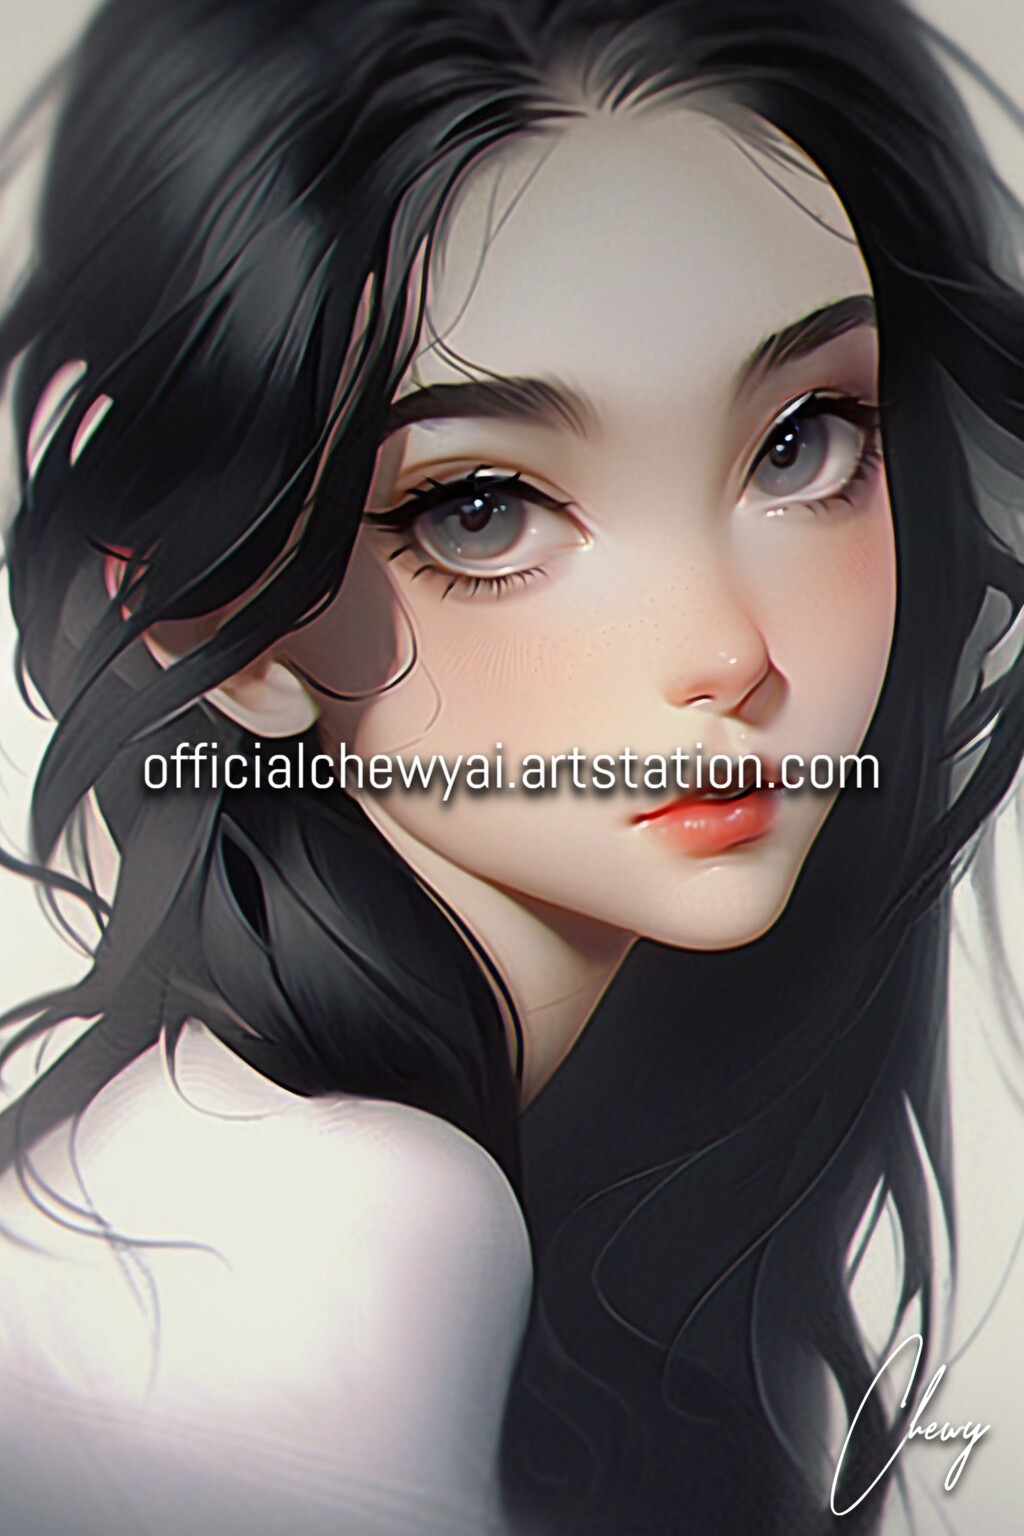 ArtStation - Dark Haired Girls | Artworks